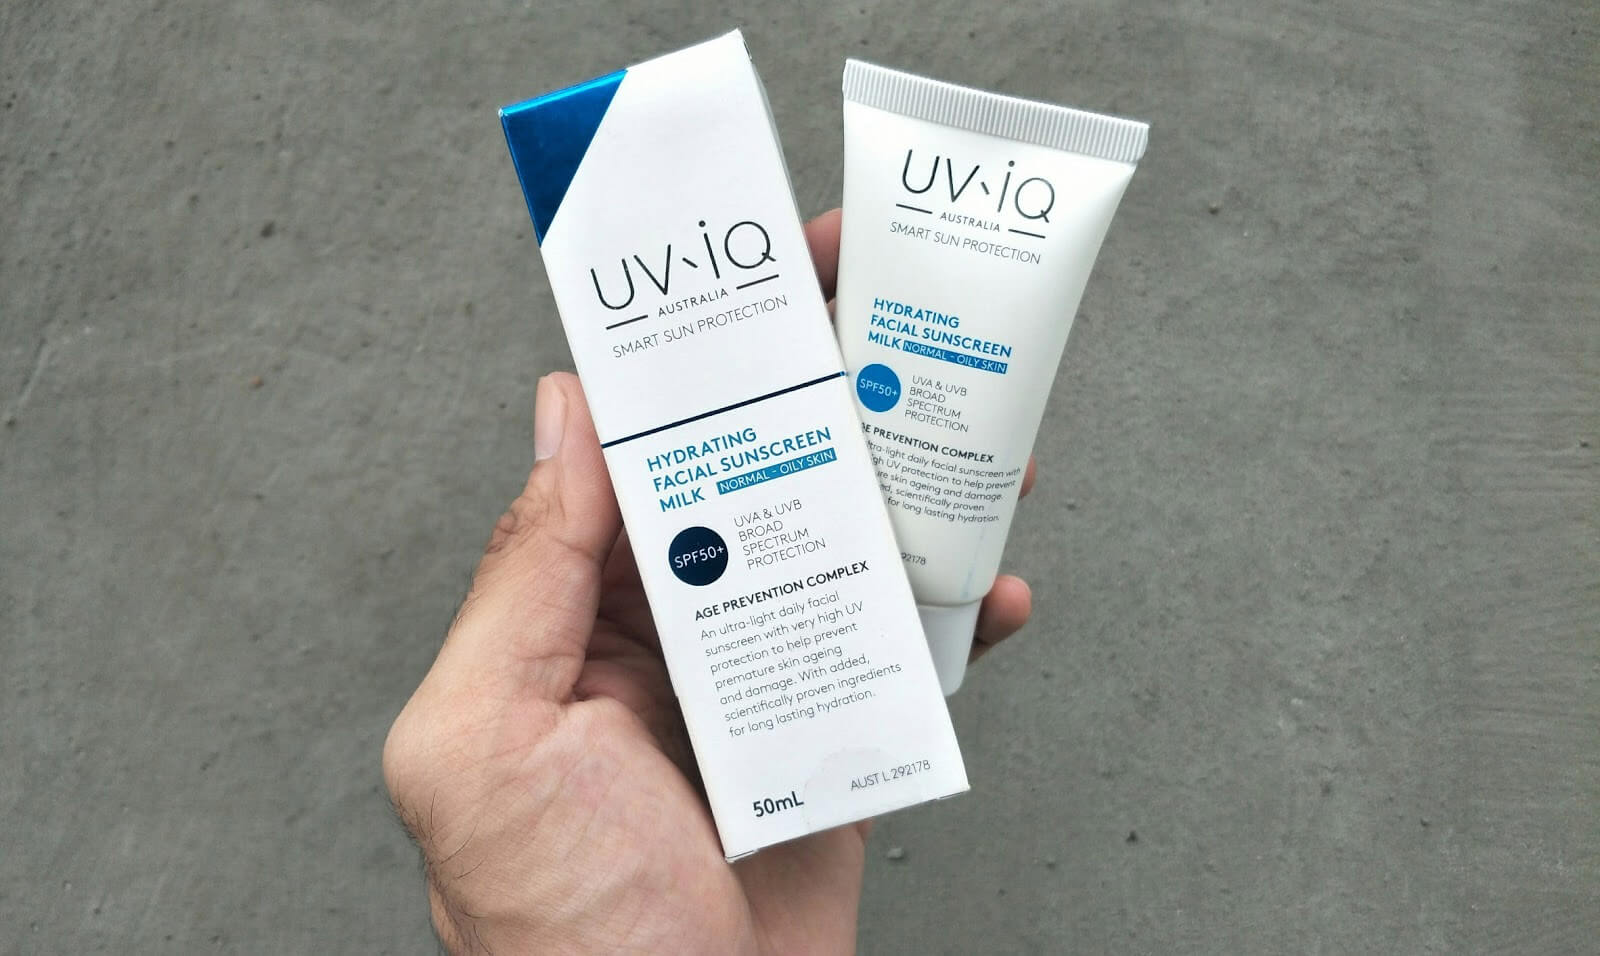 UV-iQ Hydrating Facial Sunscreen Milk SPF50+ for Normal/Oily Skin,UV-iQ จากออสเตรเลีย,UV-iQ  ได้การรองรับจากสภามะเร็งเรื่องการป้องกันแสงแดดอย่างมีประสทธิภาพ,กันแดด UV-iQ,กันแดด UV-iQ ดีมั้ย,กันแดด UV-iQ ซื้อที่ไหน,